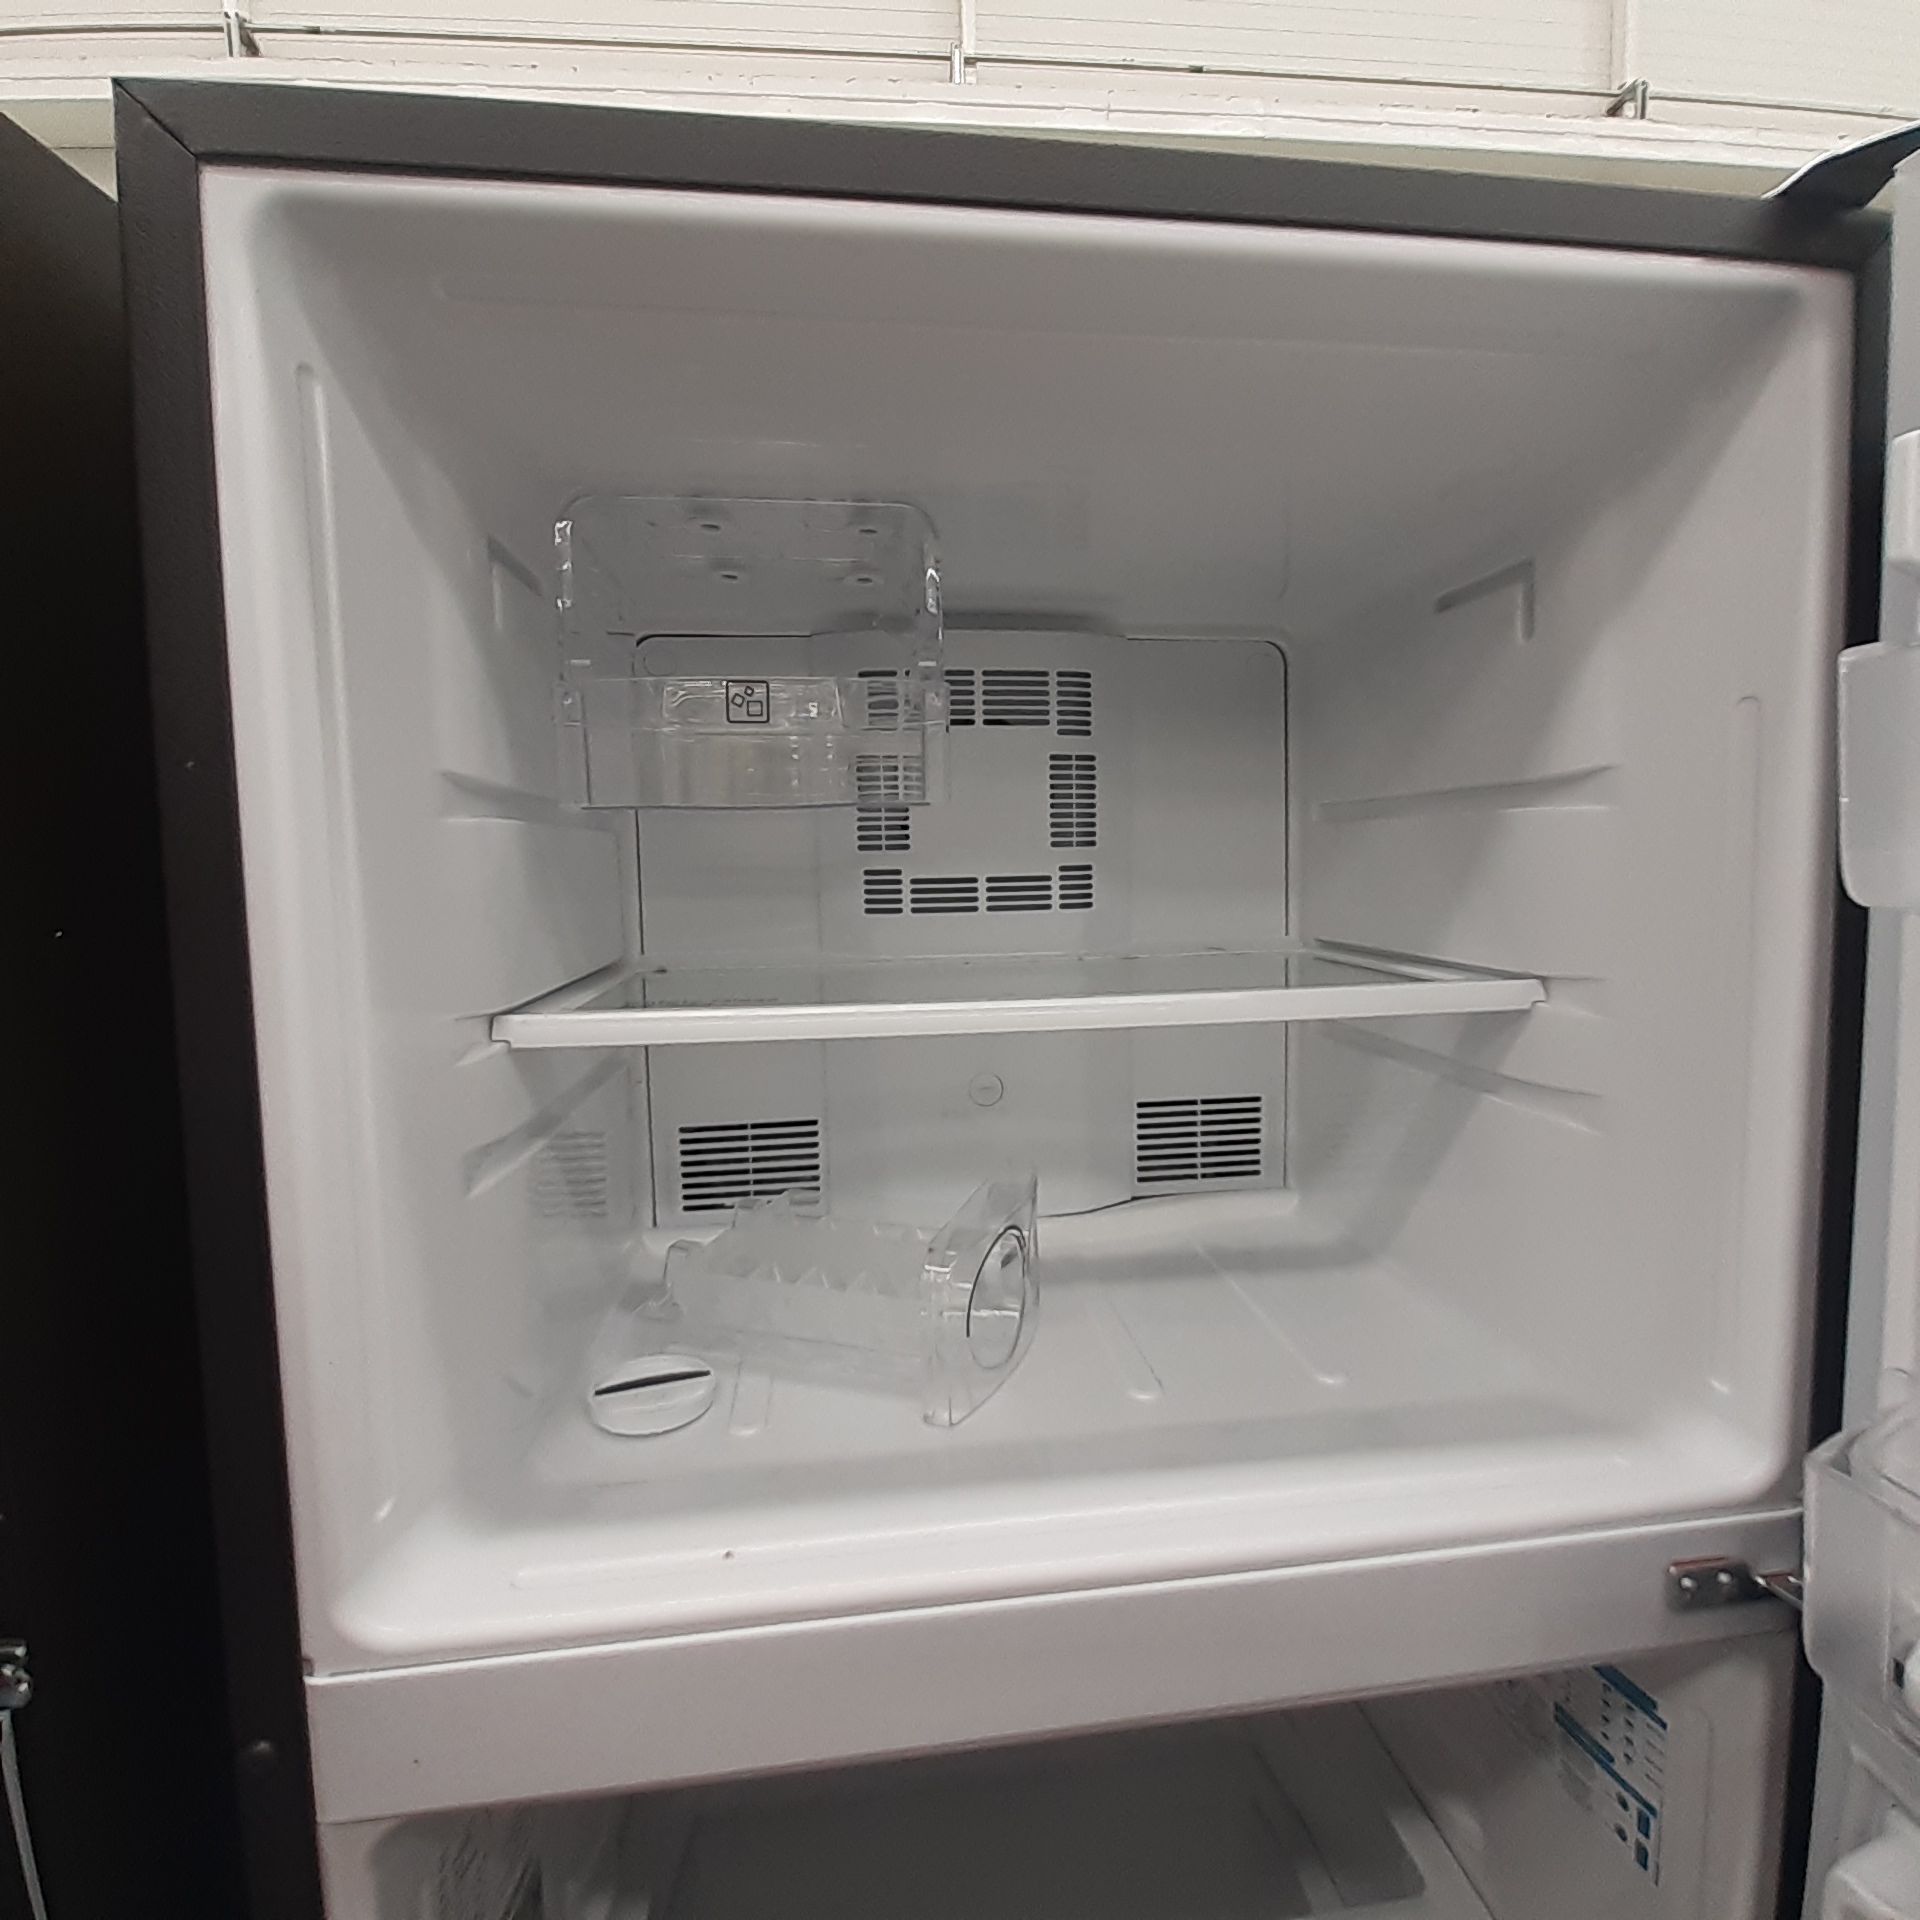 Lote De 2 Refrigeradores: 1 Refrigerador Marca Mabe, 1 Refrigerador Marca Atvio, Distintos Modelos - Image 13 of 23